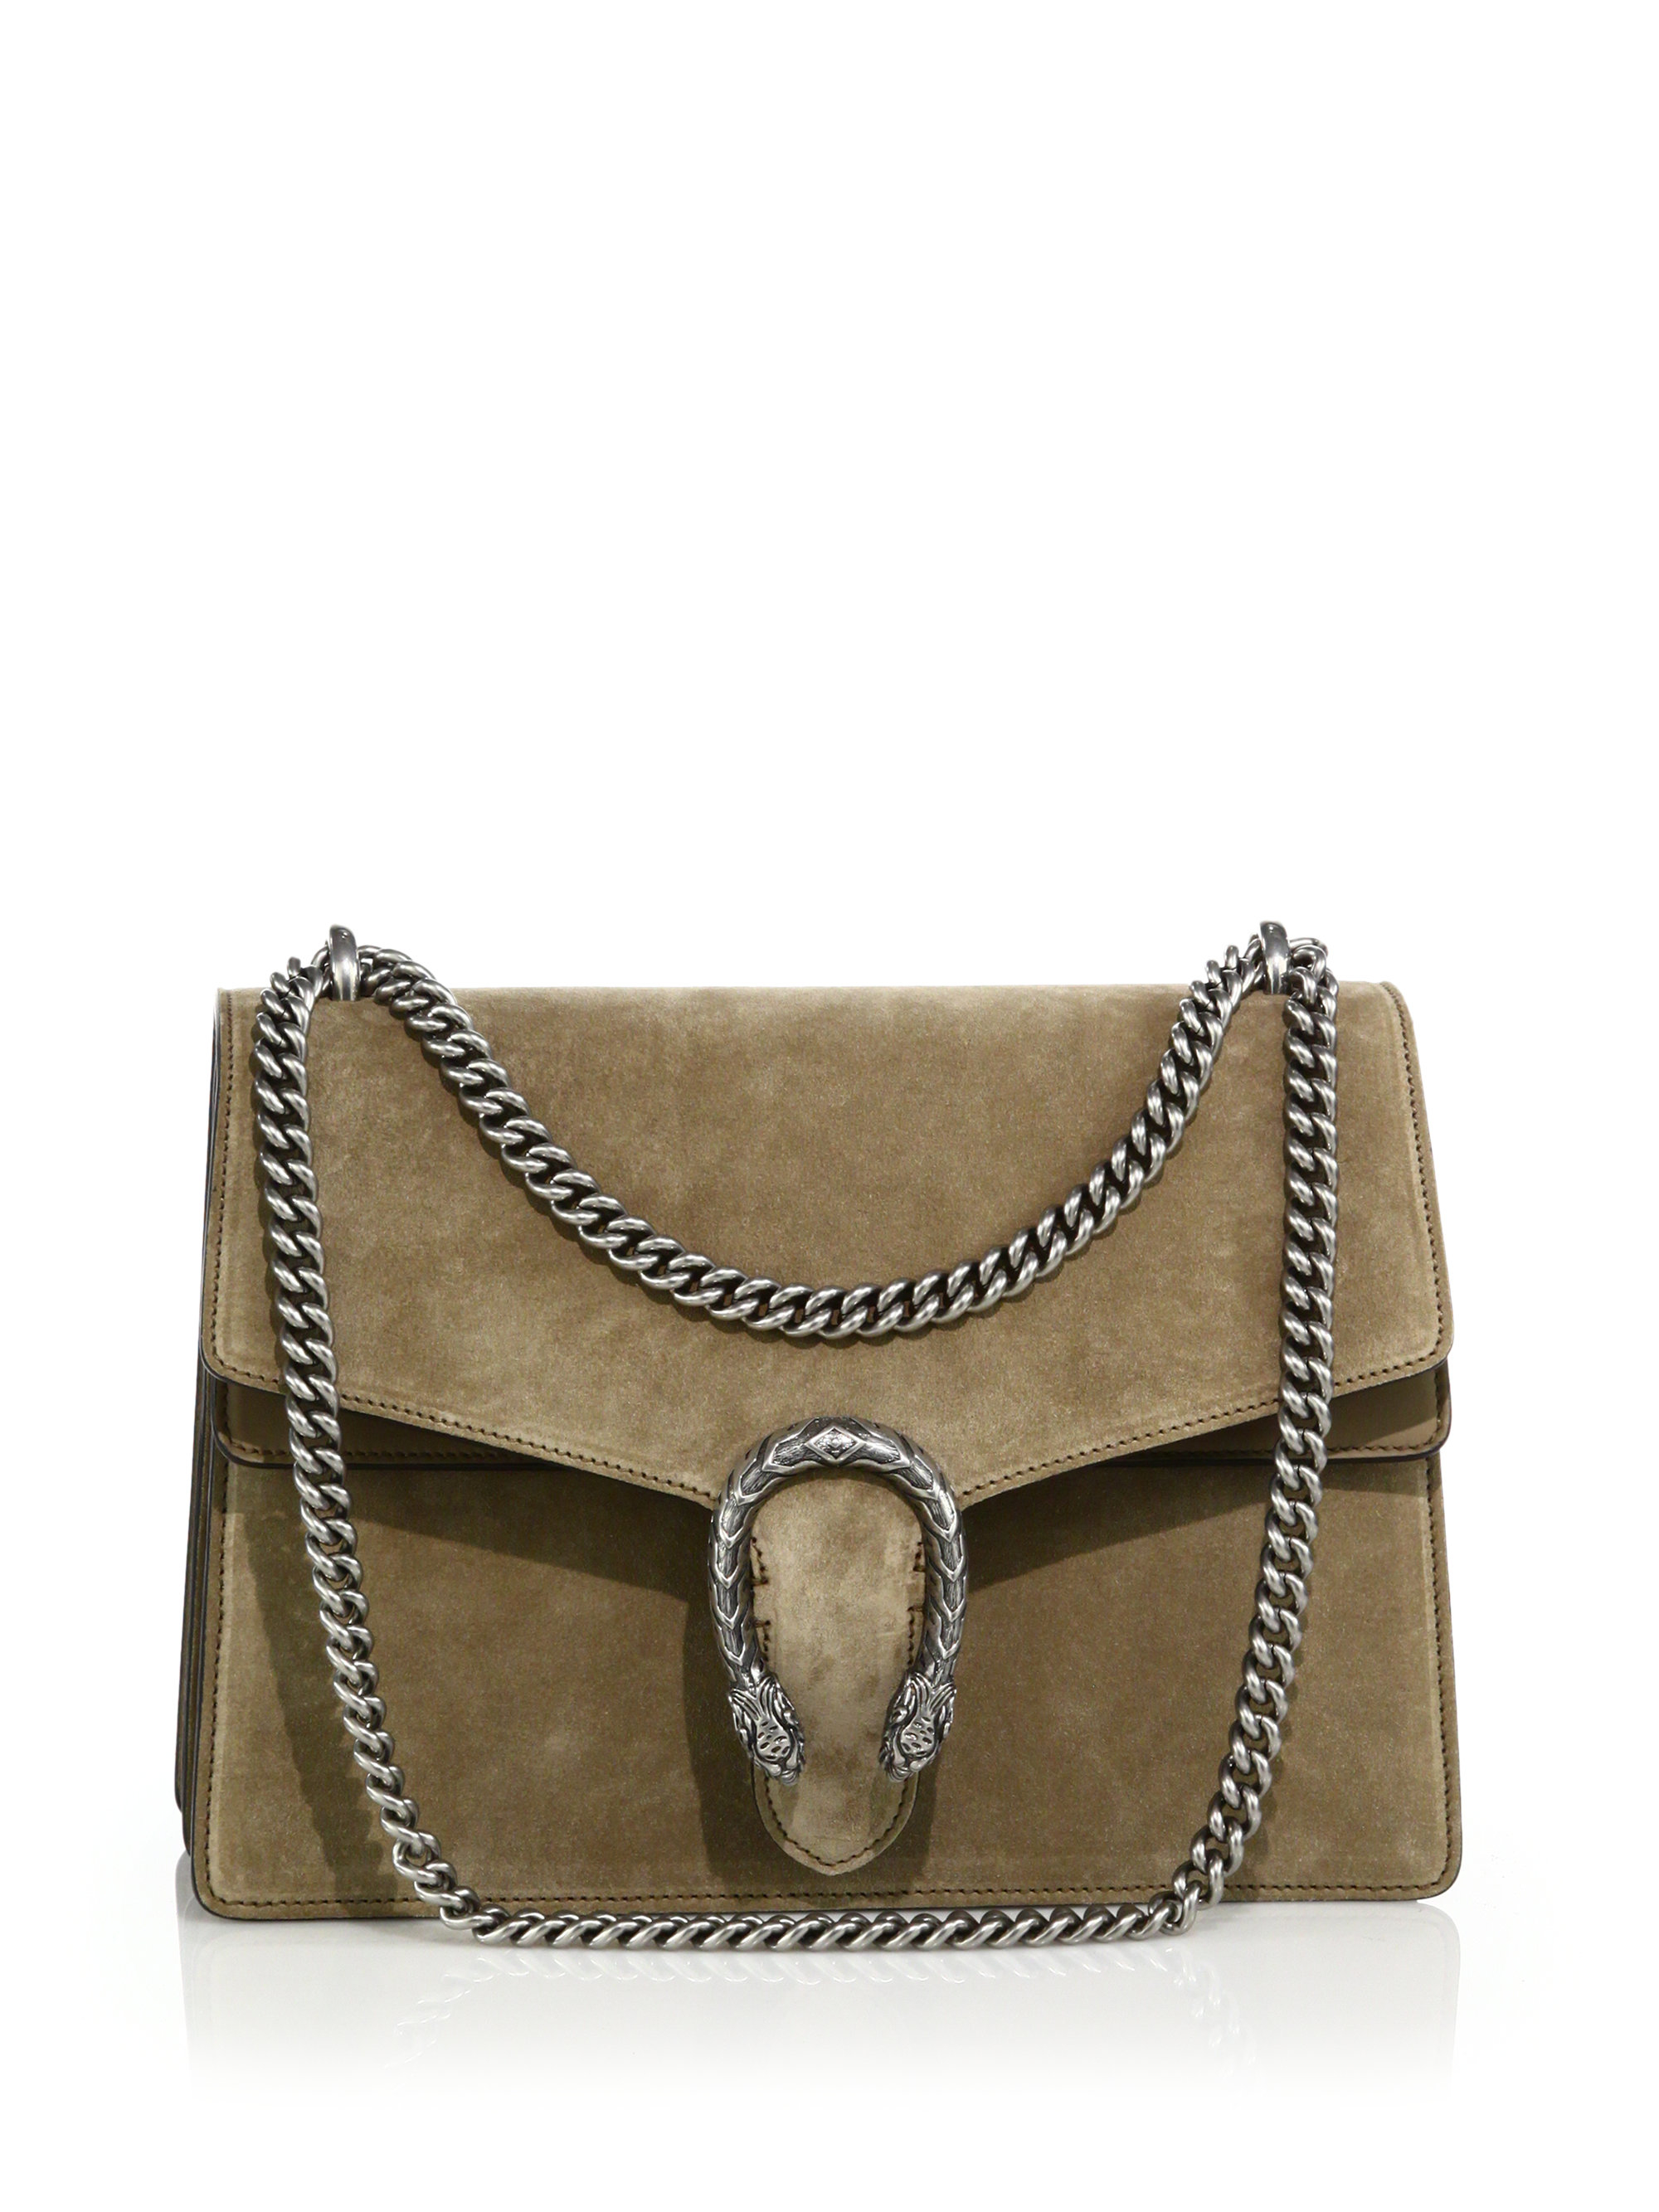 Gucci Dionysus Medium Suede Shoulder Bag in Brown | Lyst